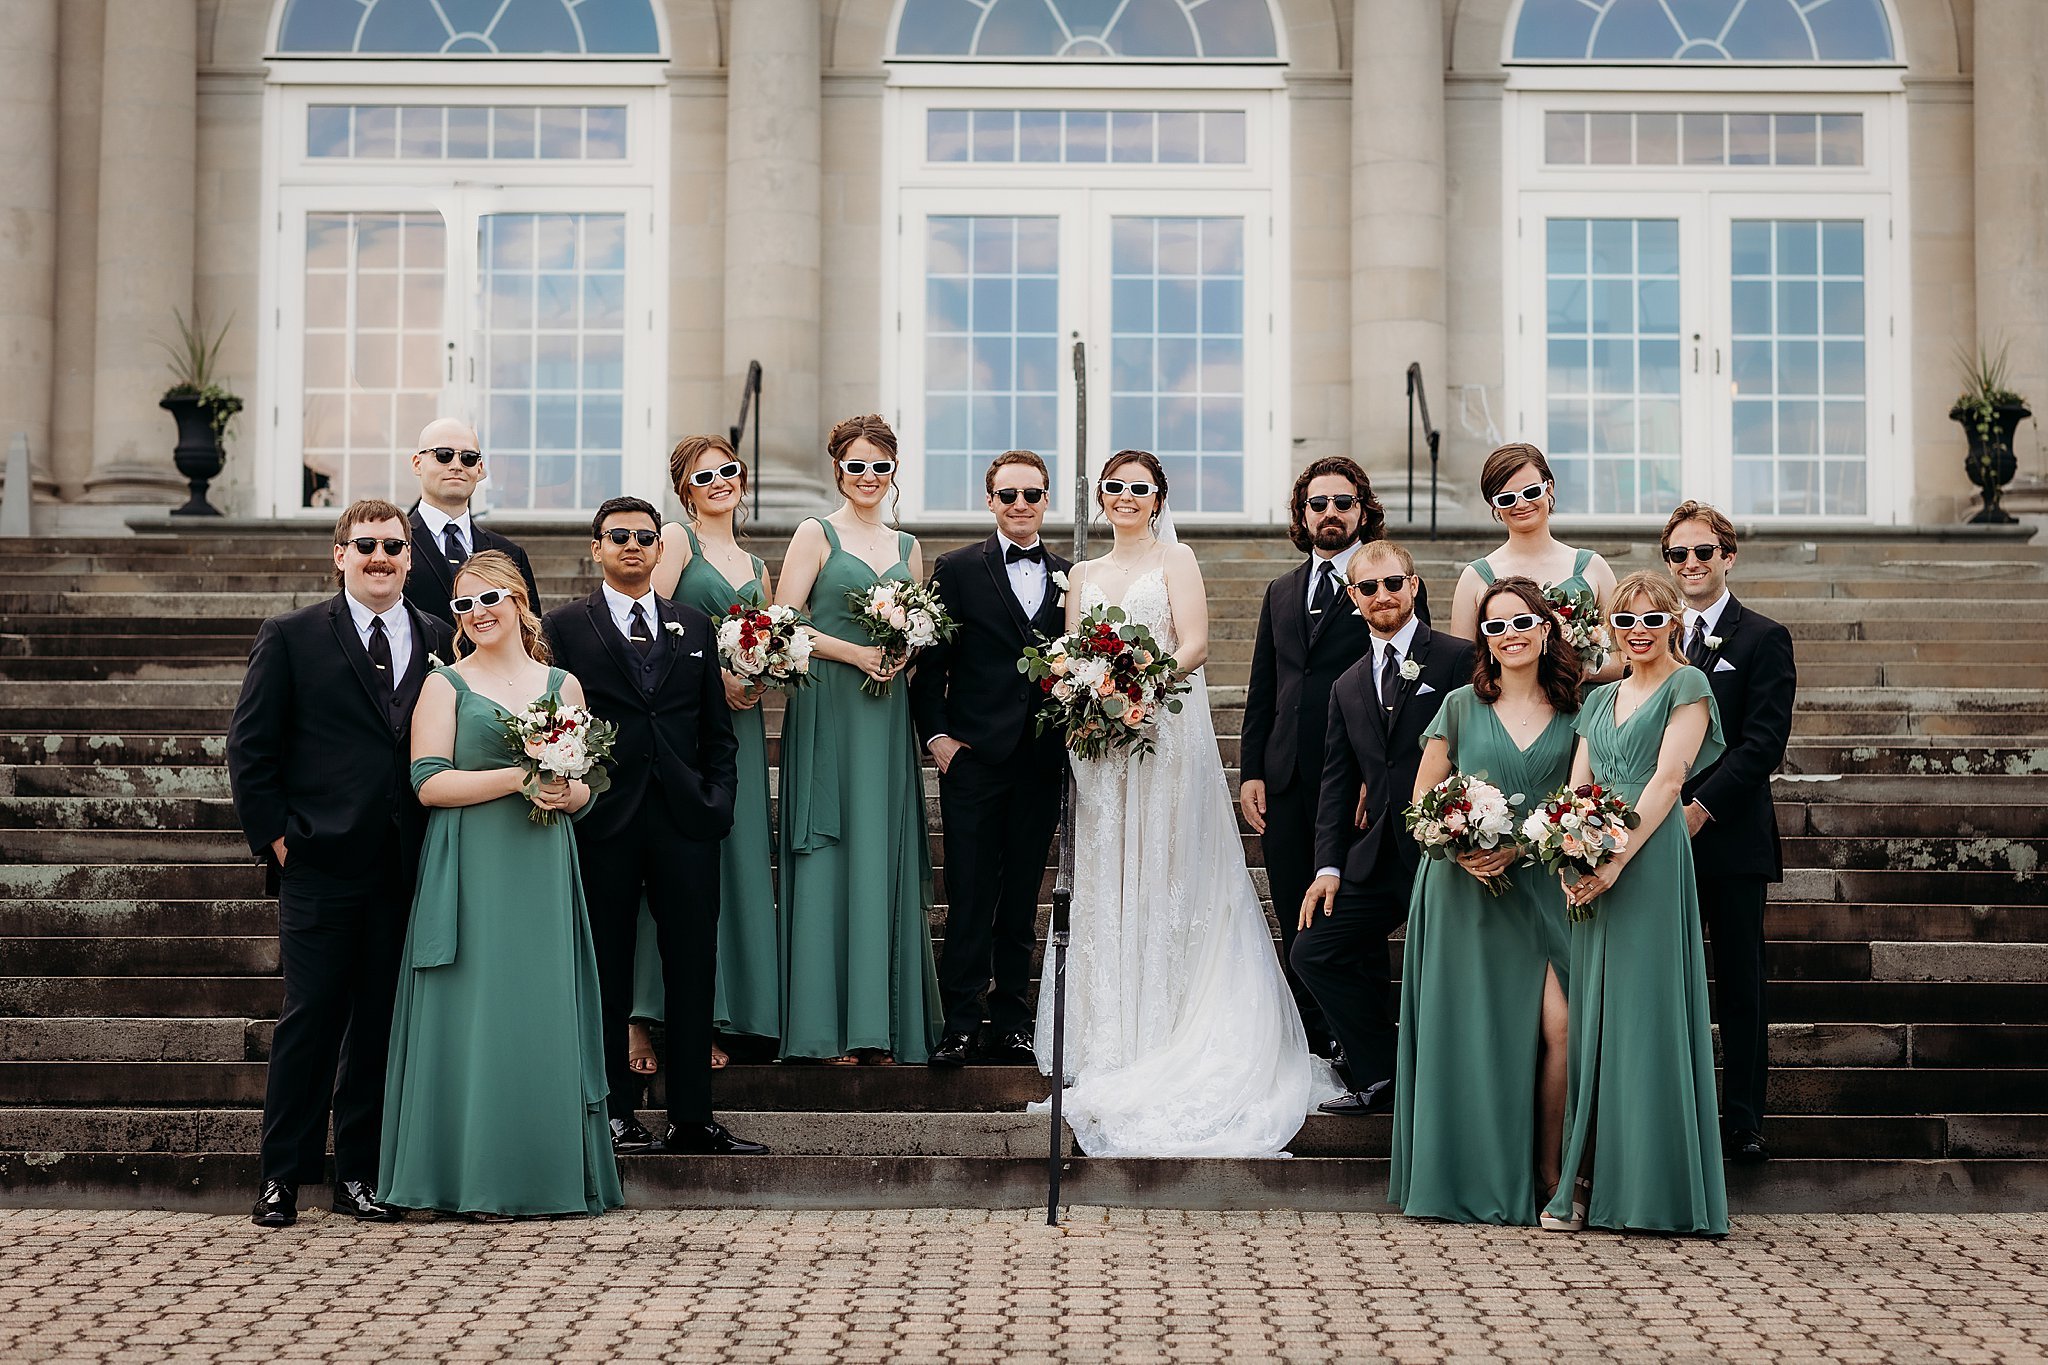 Aldrich+Mansion+Wedding+by+Dori+Fitzpatrick+Photography_0052.jpg